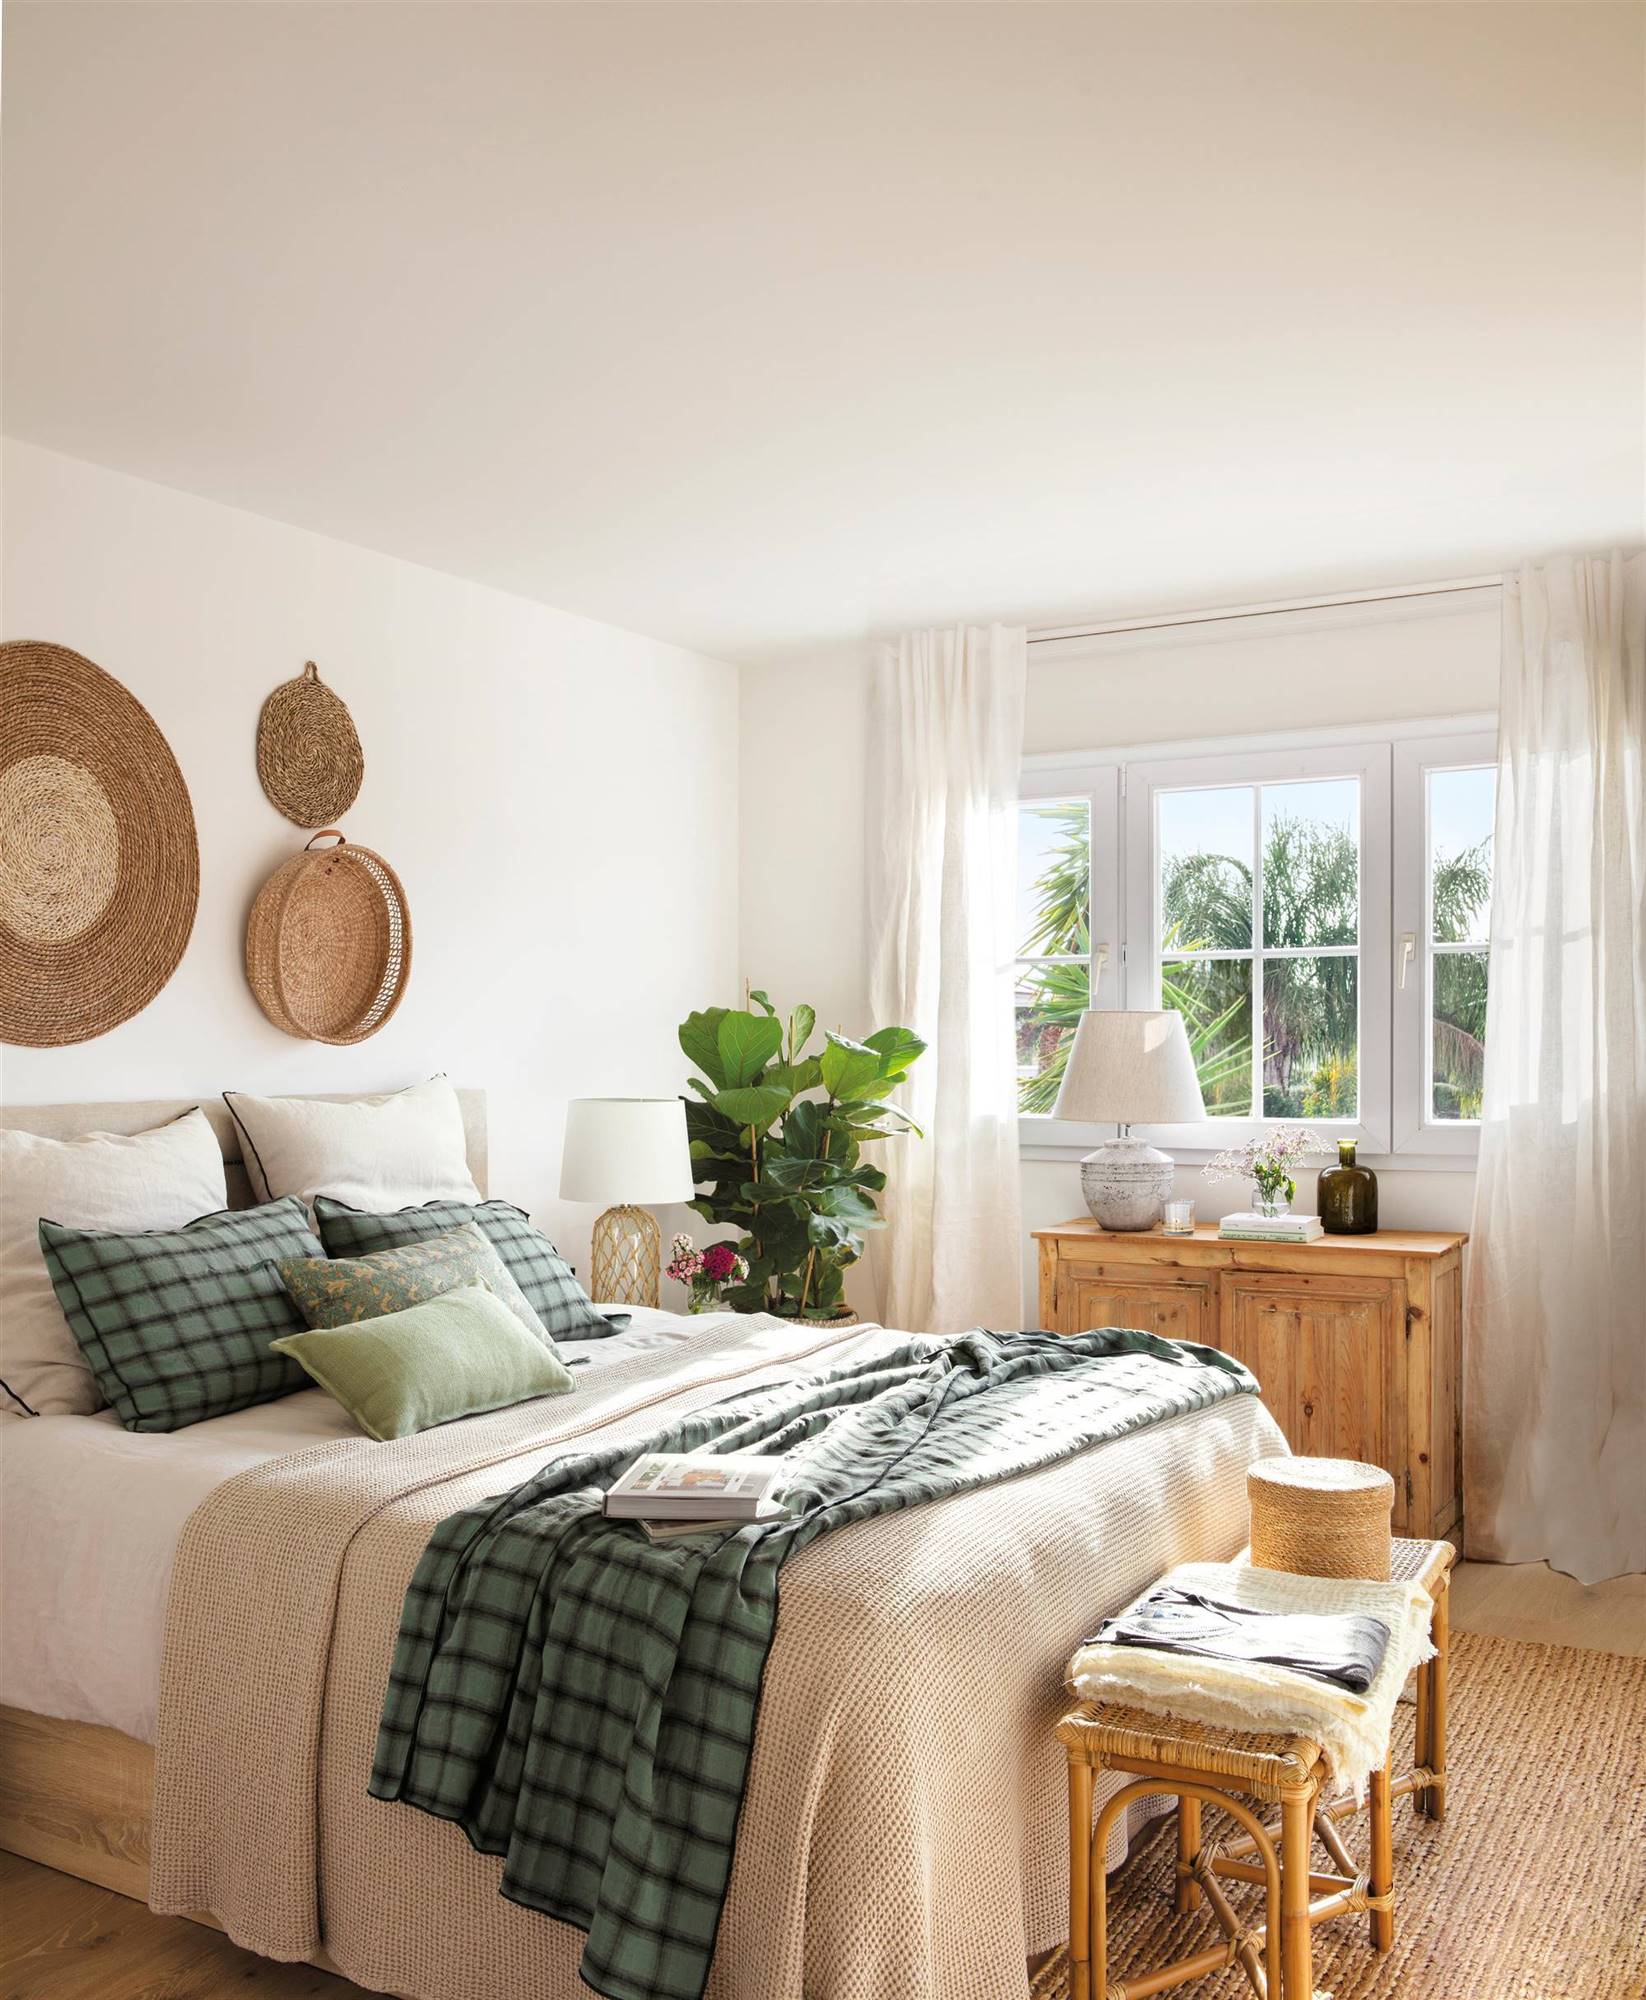 Dormitorio de estilo moderno con cabecero tapizado y cómoda de madera decapada. 